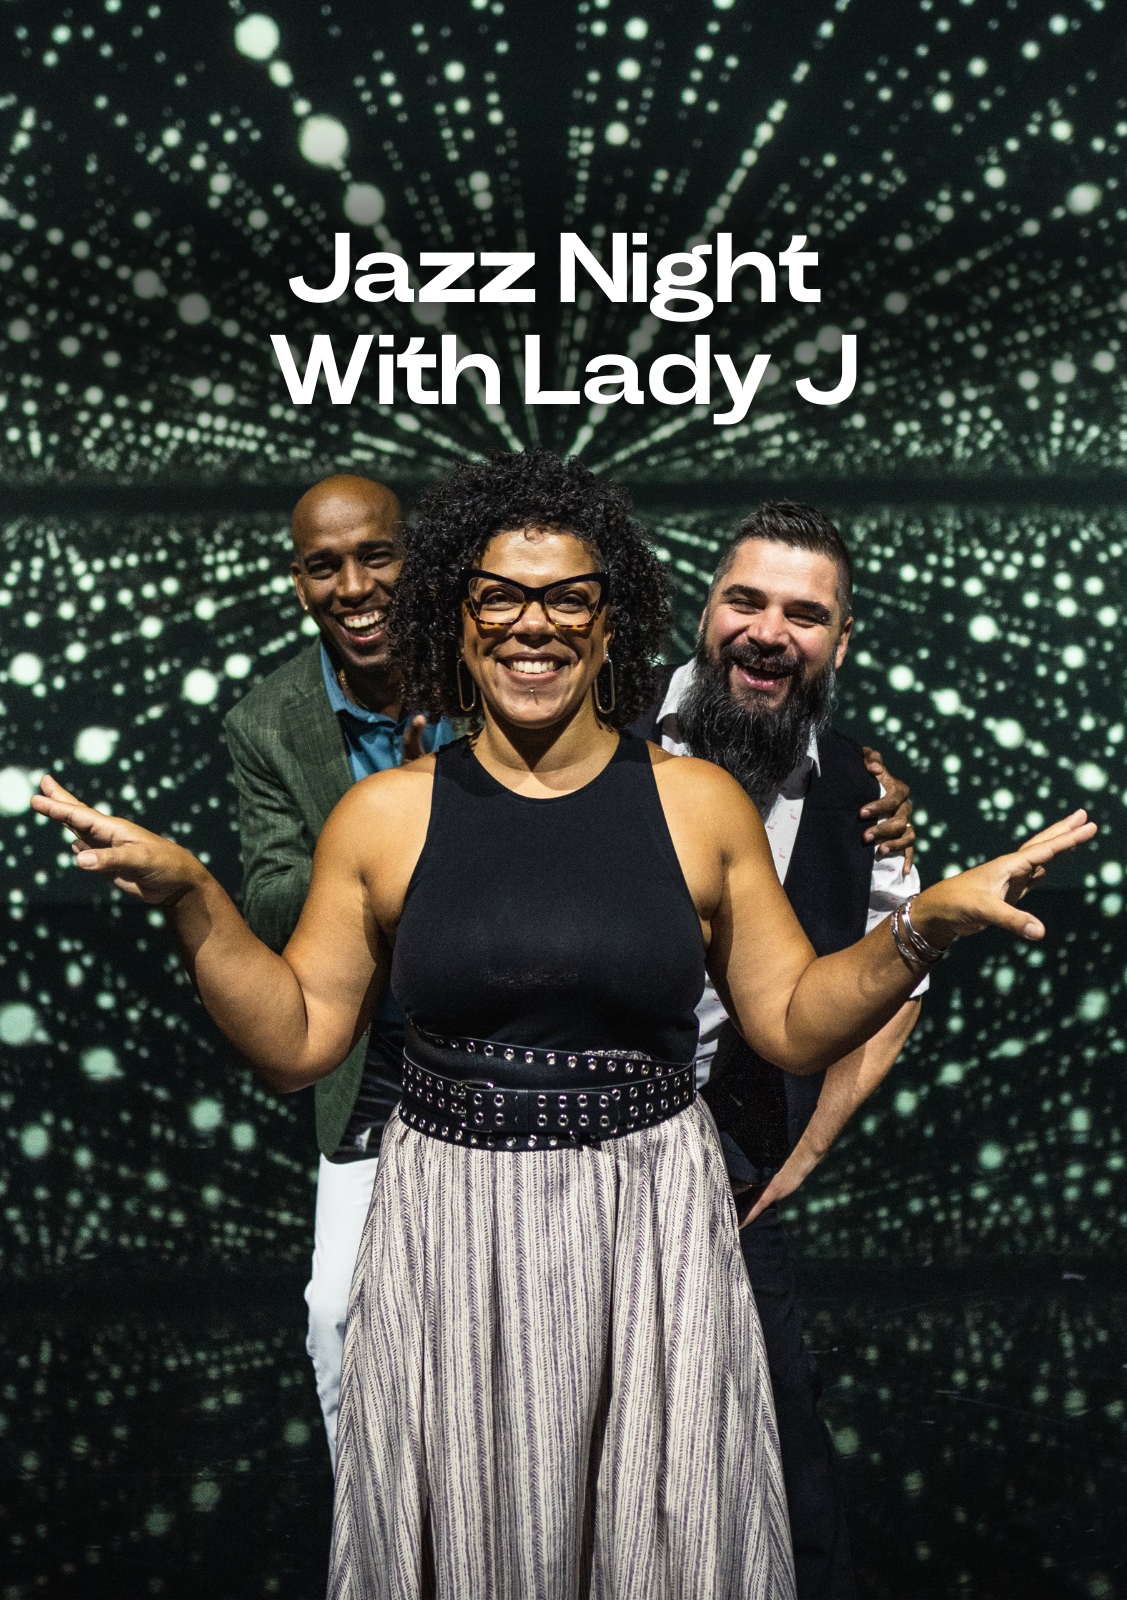 The Jazz Night With Lady JJazz, Pop & Rock Hits. We Jazz it all up!